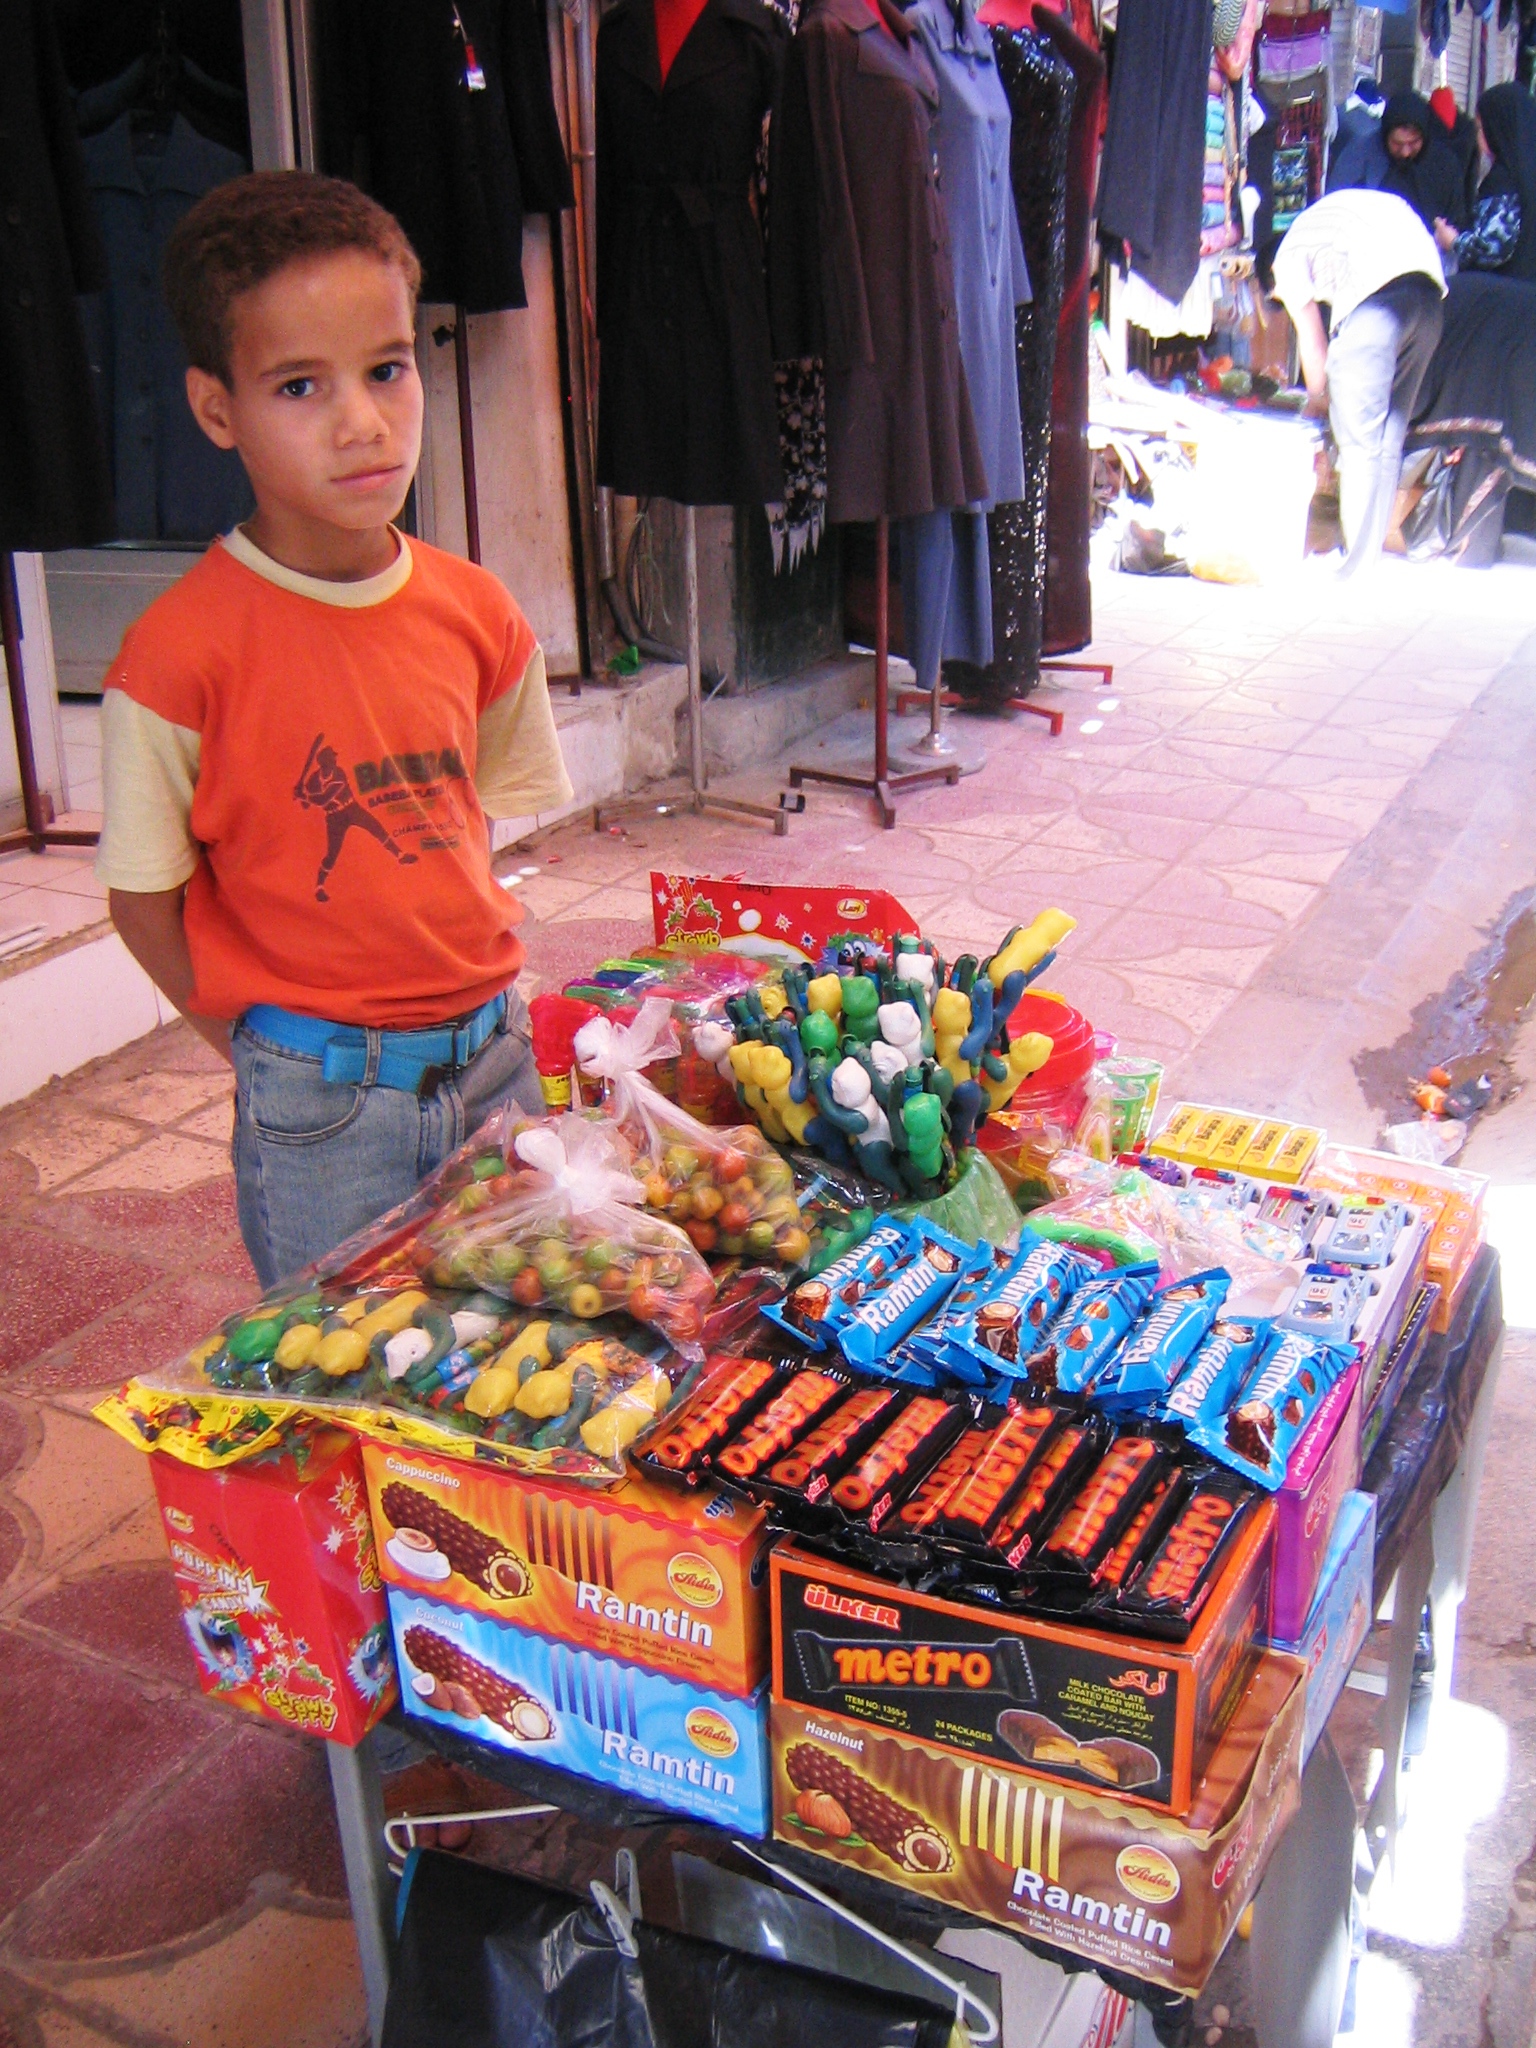 بازار بوشهر 